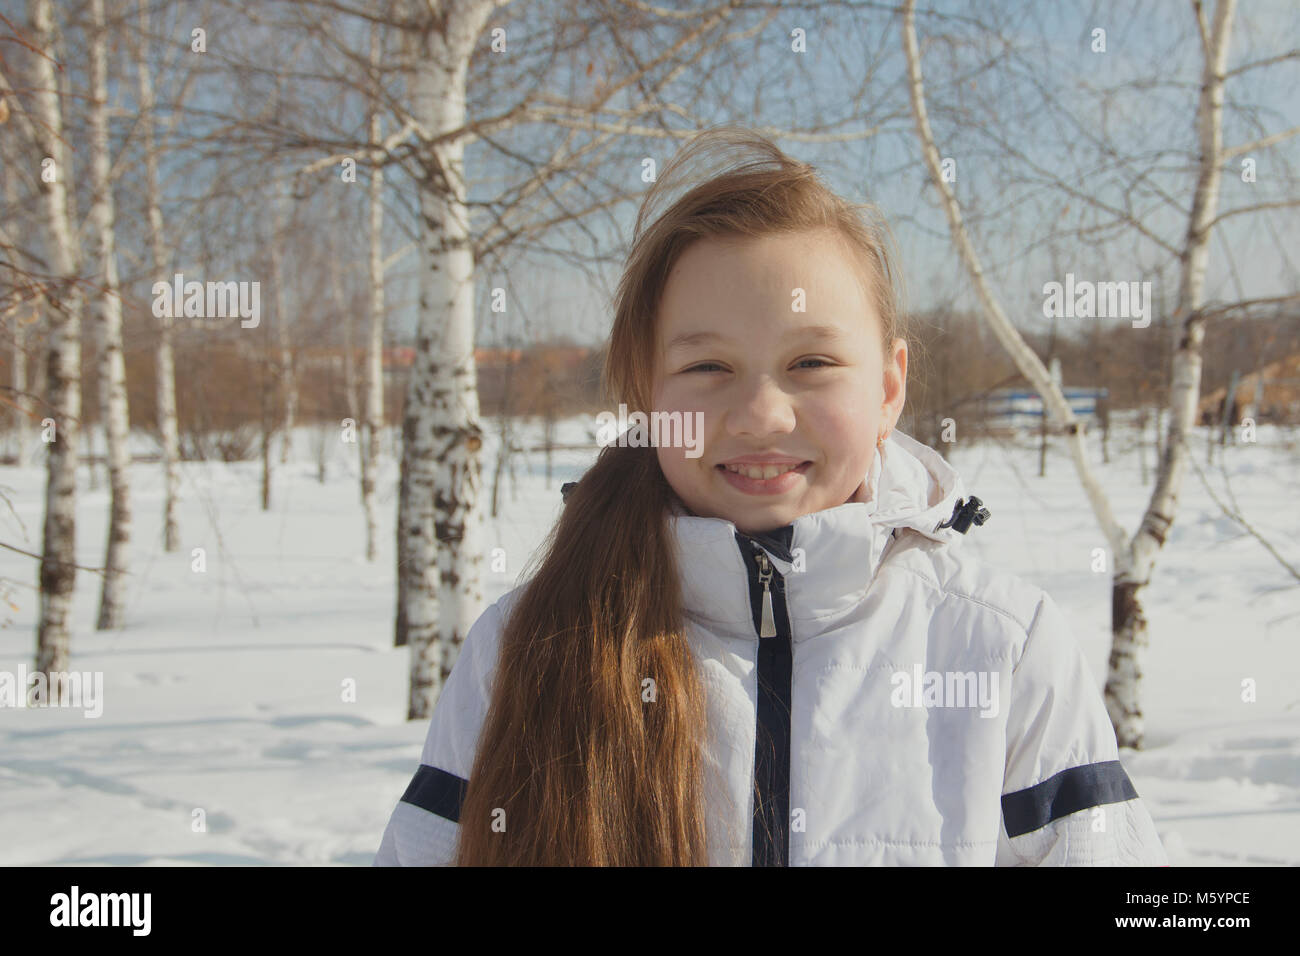 Portrait of plump teen girl between the trees in winter Stock Photo